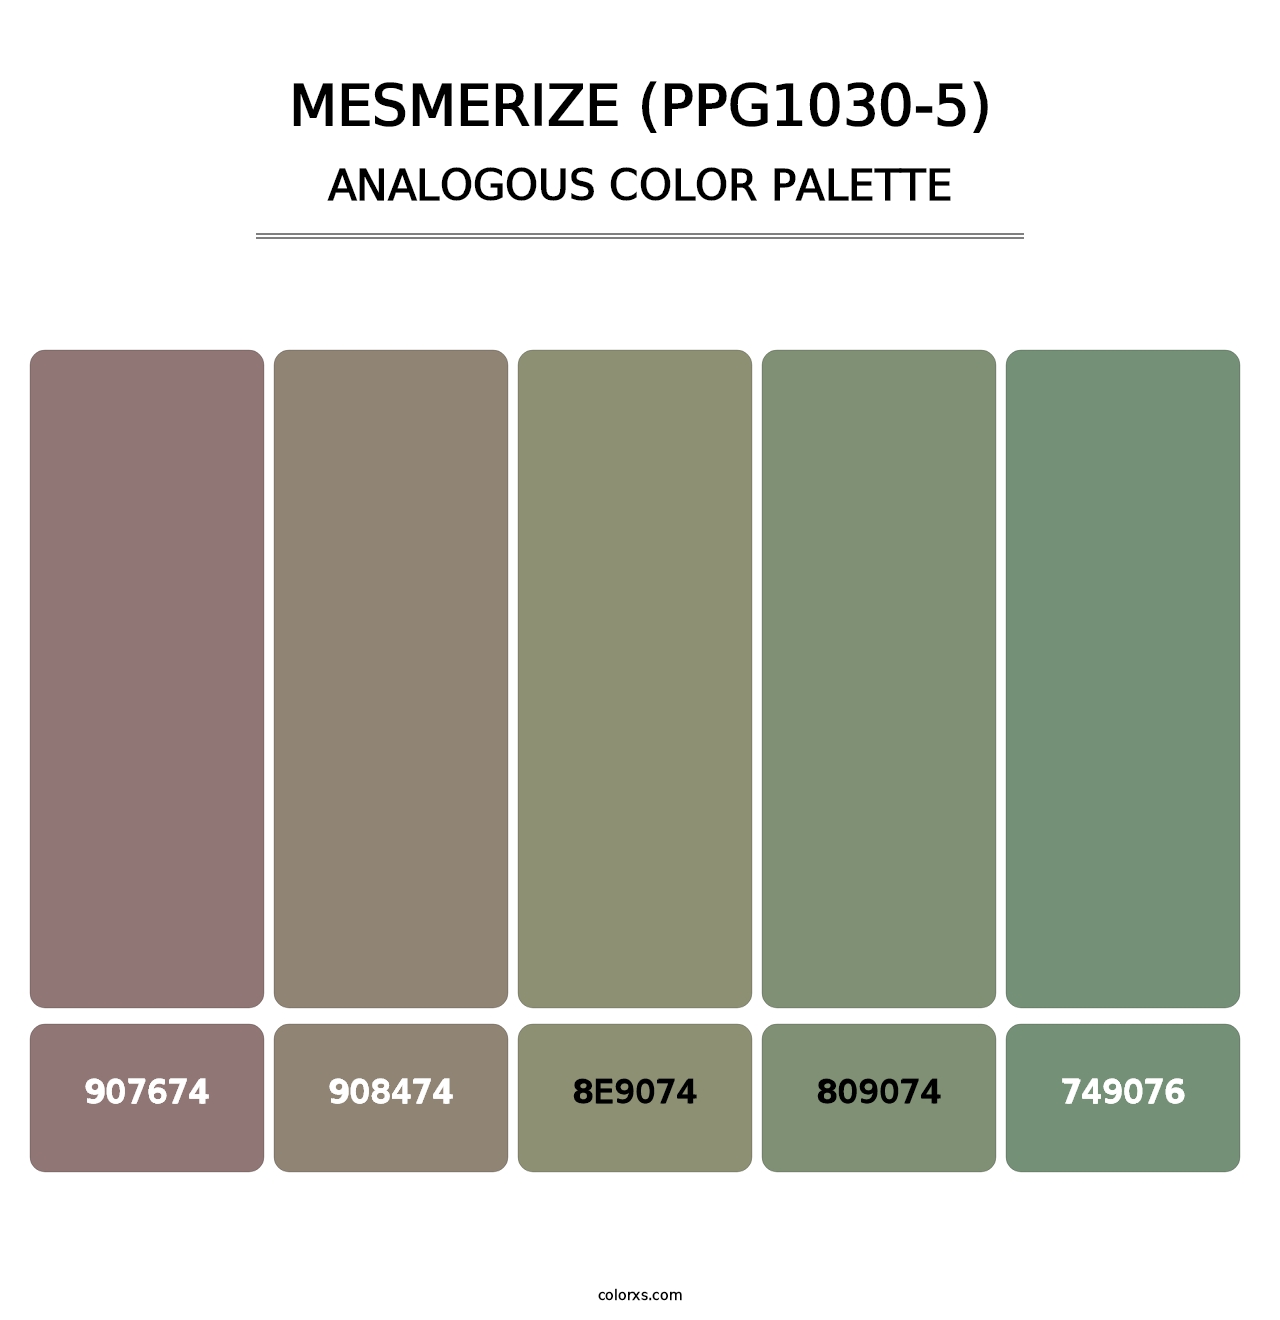 Mesmerize (PPG1030-5) - Analogous Color Palette